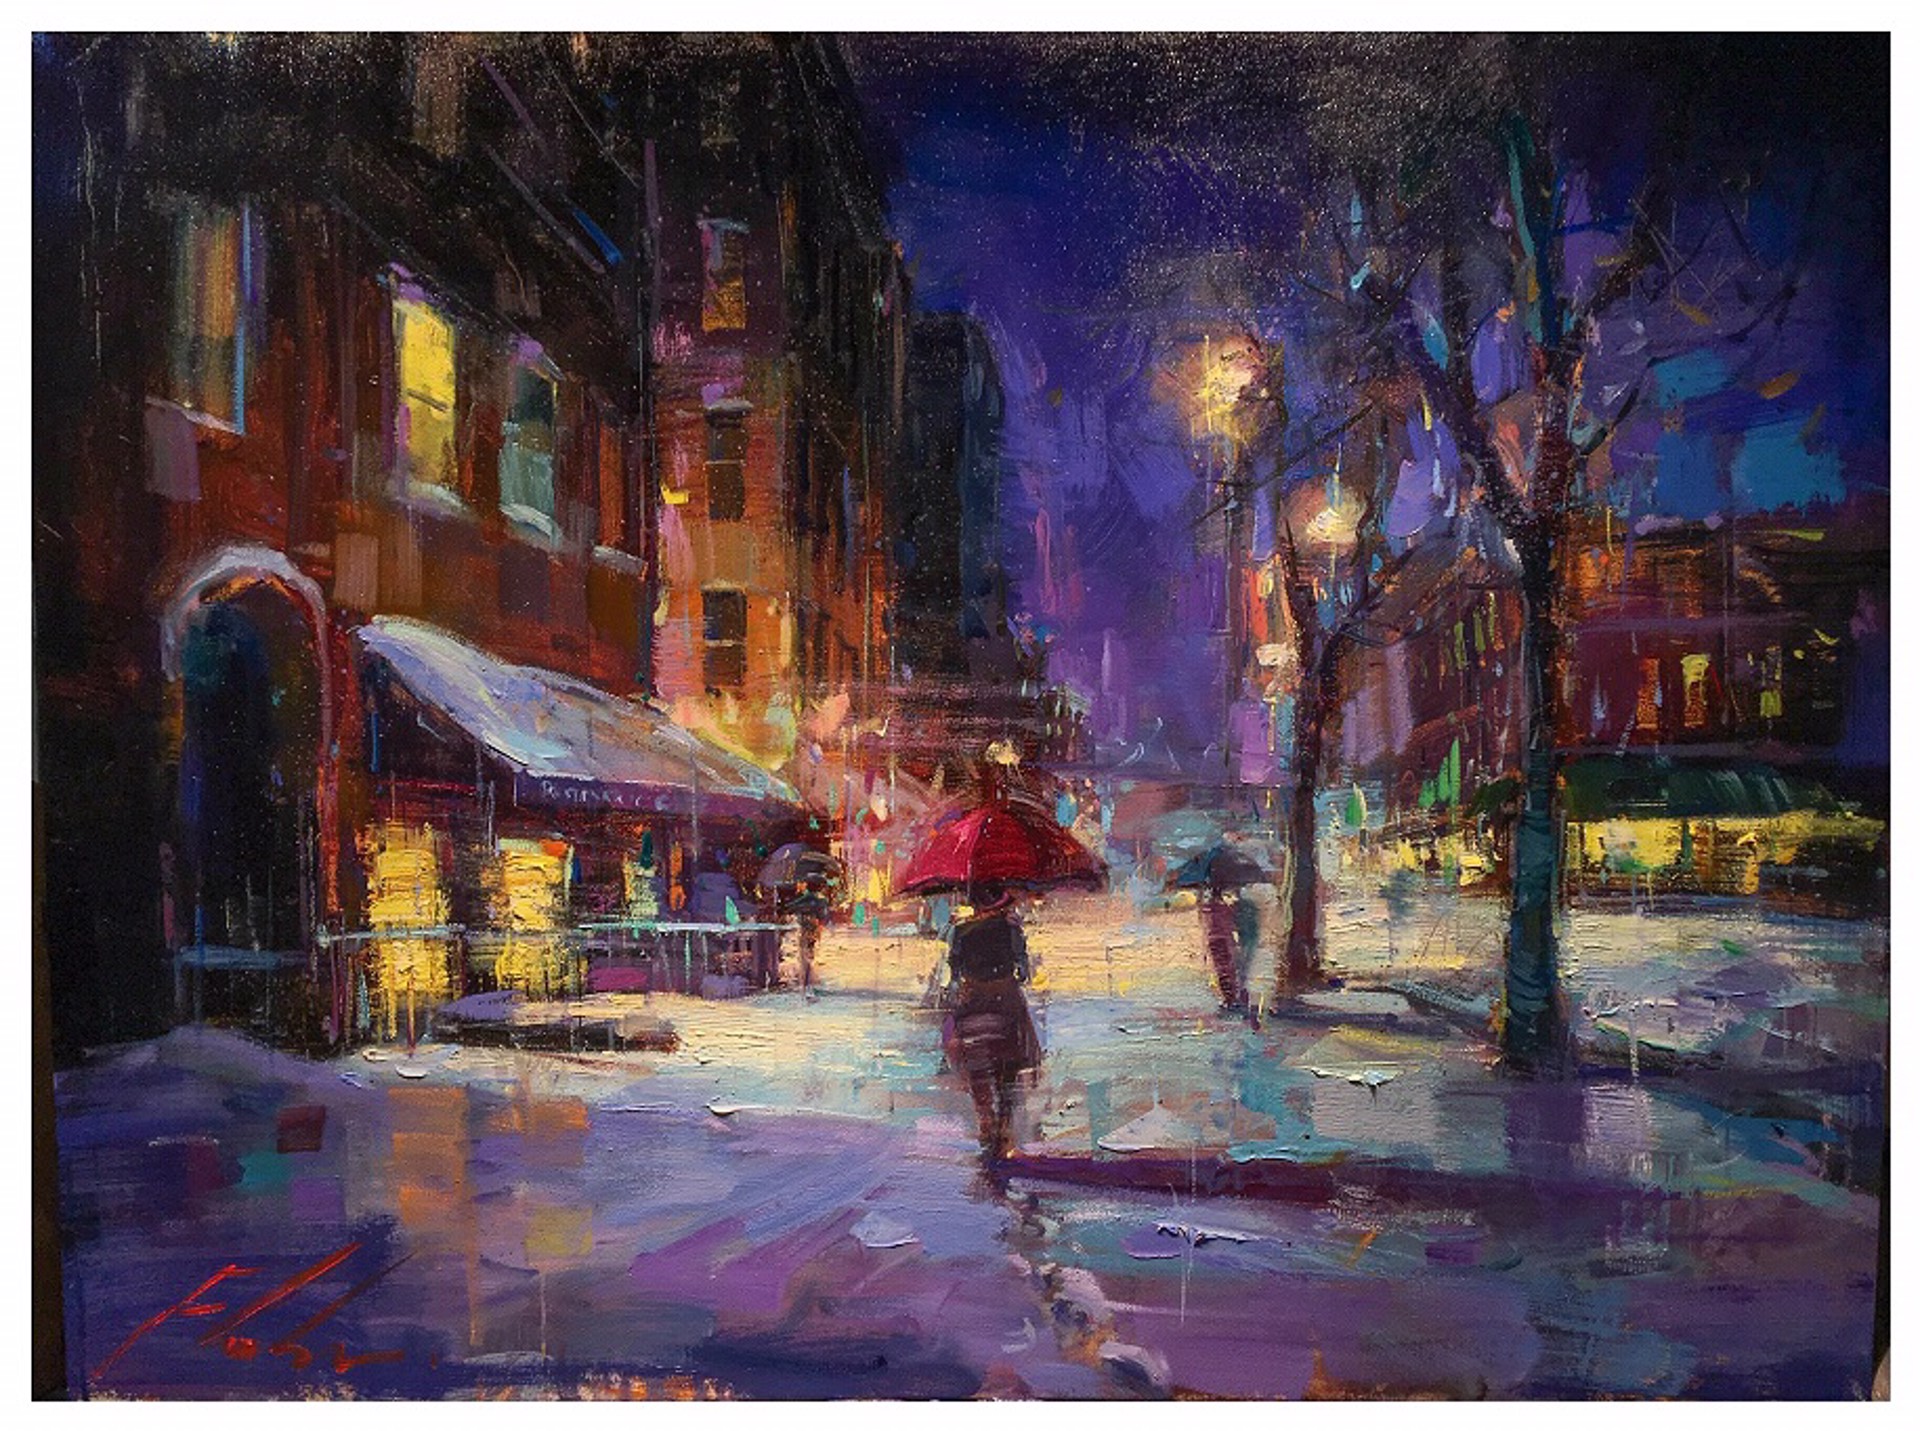 Winters Glow by Michael Flohr